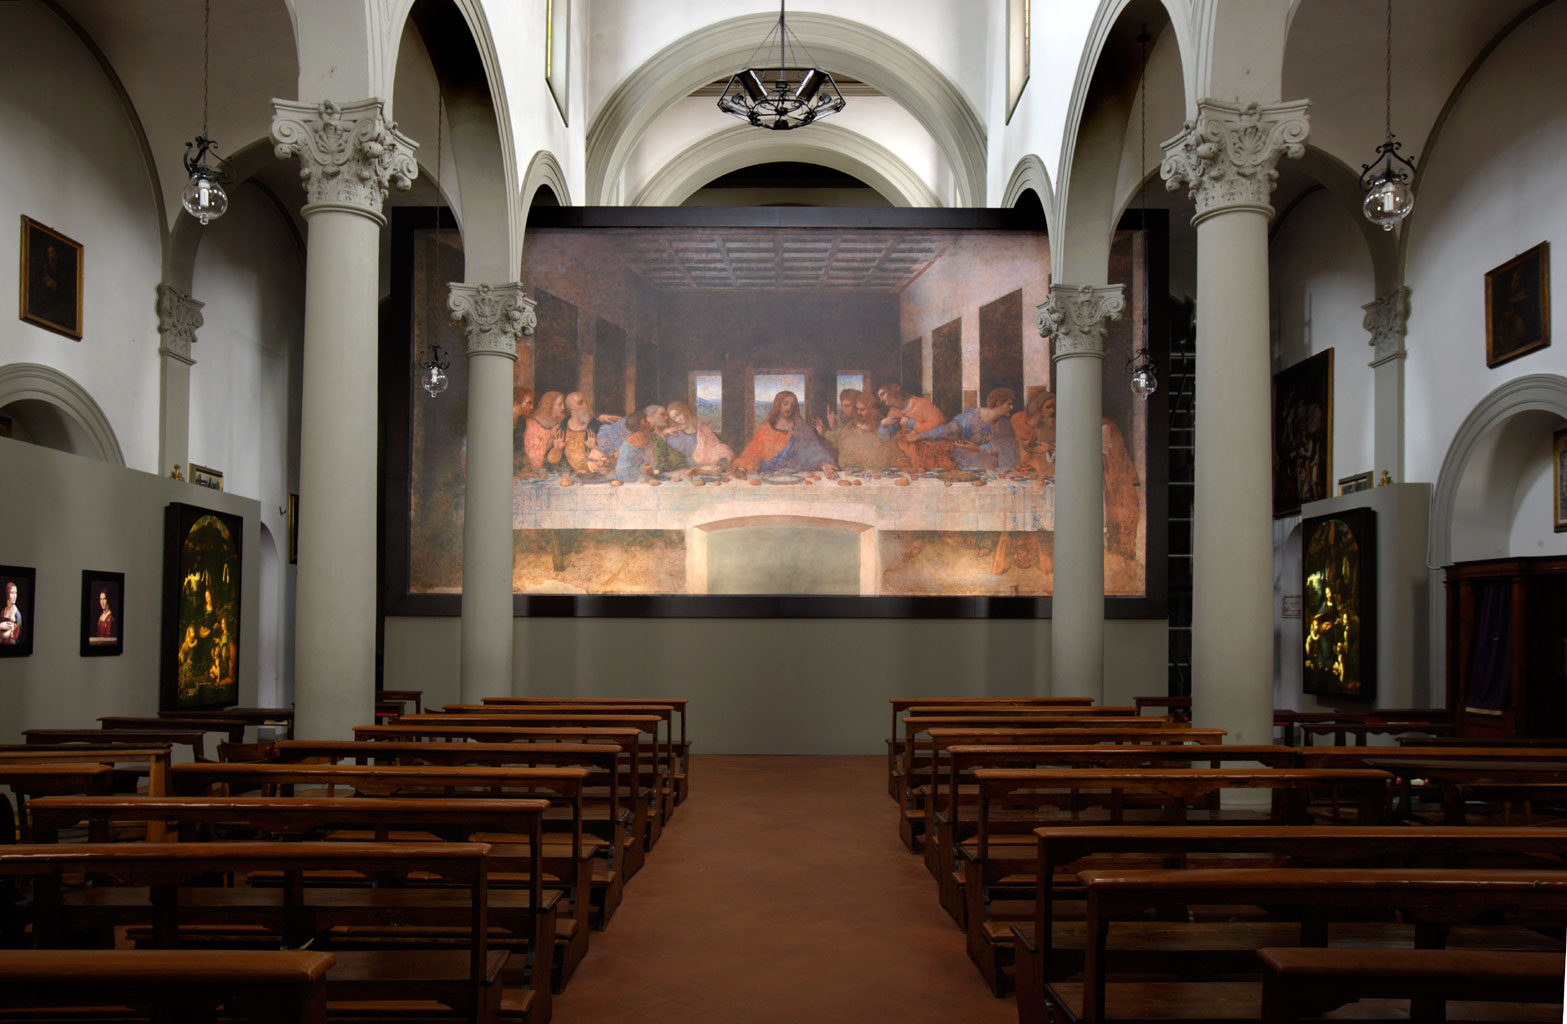 The Last Supper (1494–1498) by Leonardo da Vinci, on show at the Basilica di Santa Croce, Florence